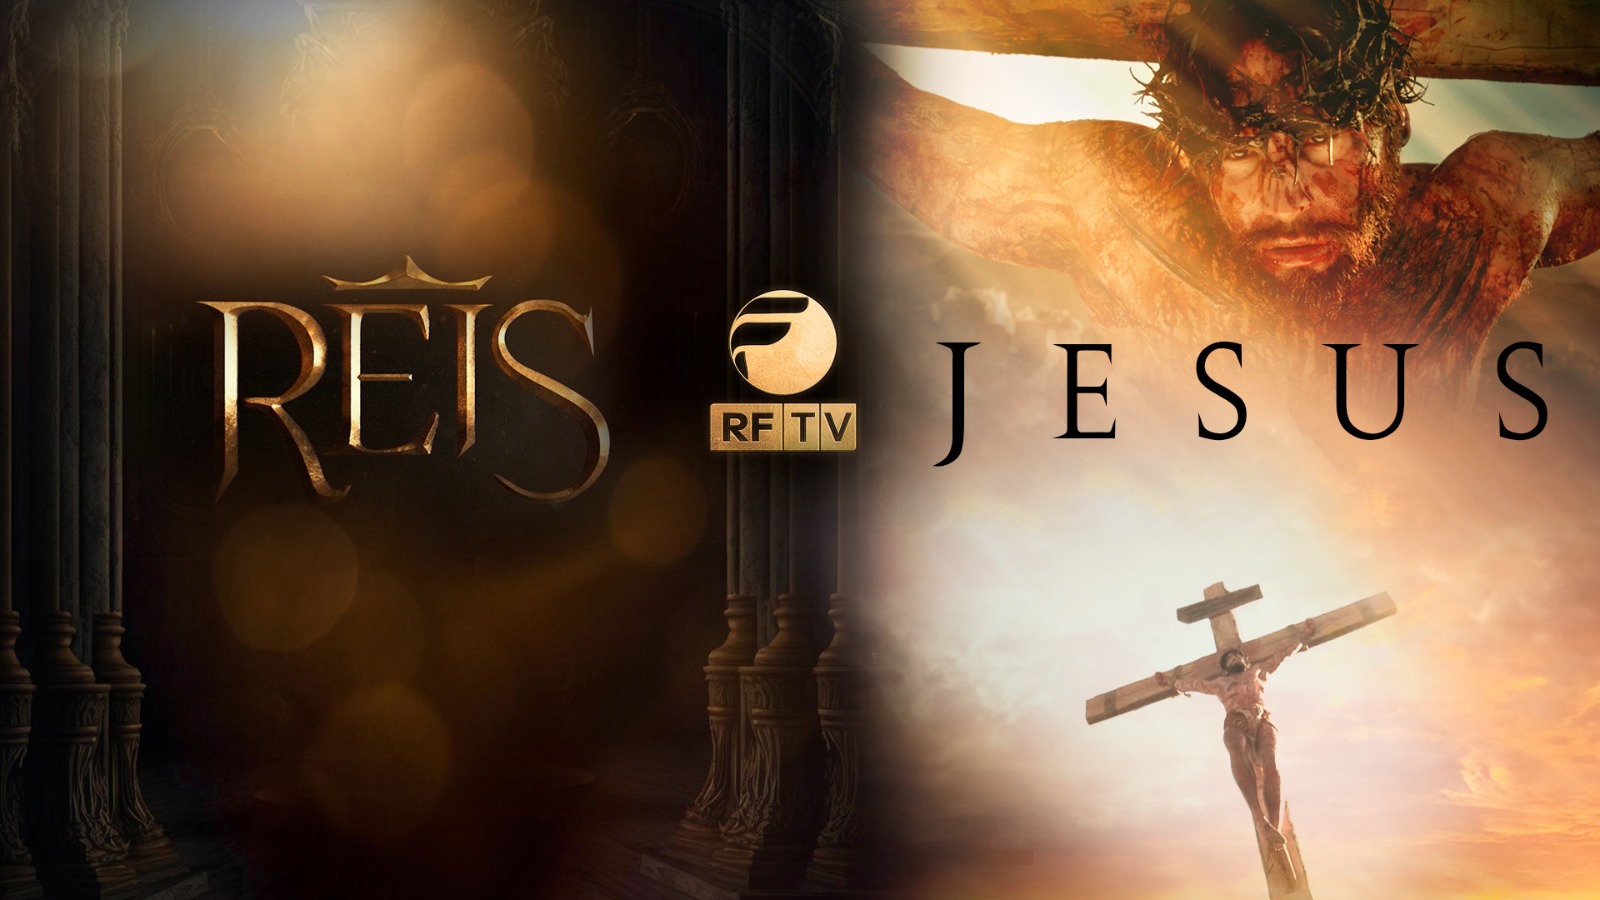 RFTV estreia novelas 'Reis' e 'Jesus" no dia 04 de março